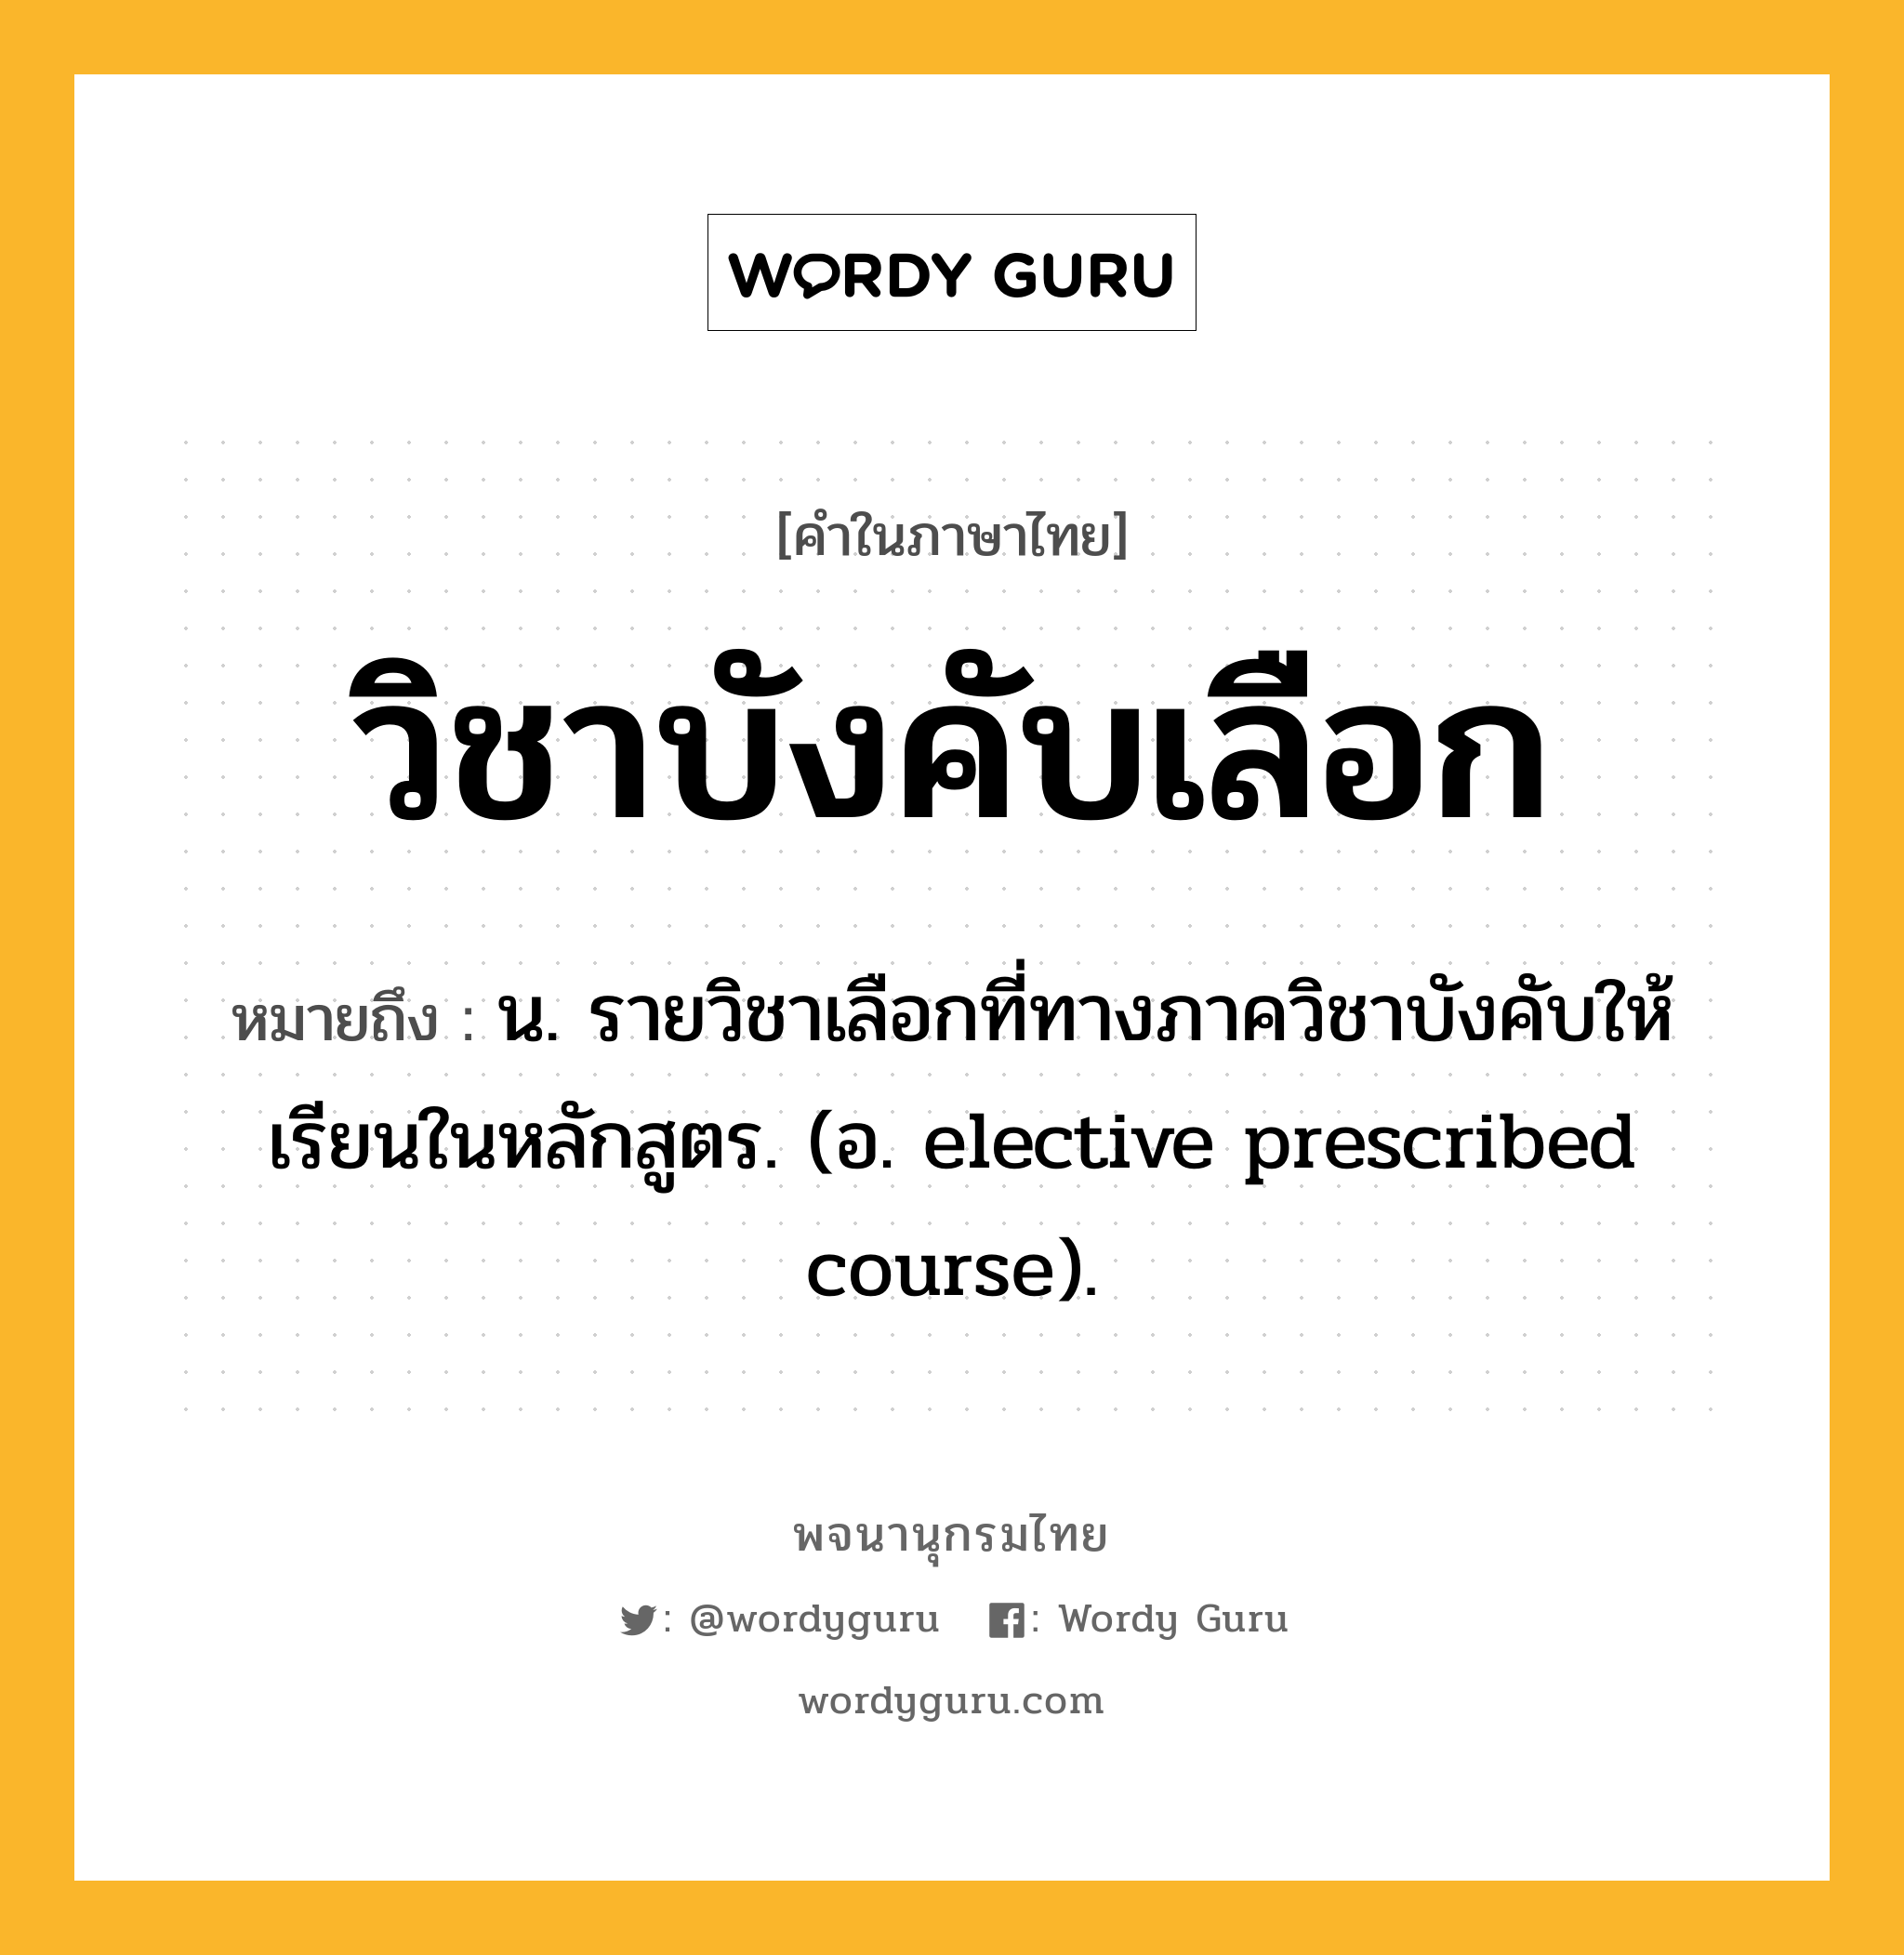 วิชาบังคับเลือก ความหมาย หมายถึงอะไร?, คำในภาษาไทย วิชาบังคับเลือก หมายถึง น. รายวิชาเลือกที่ทางภาควิชาบังคับให้เรียนในหลักสูตร. (อ. elective prescribed course).